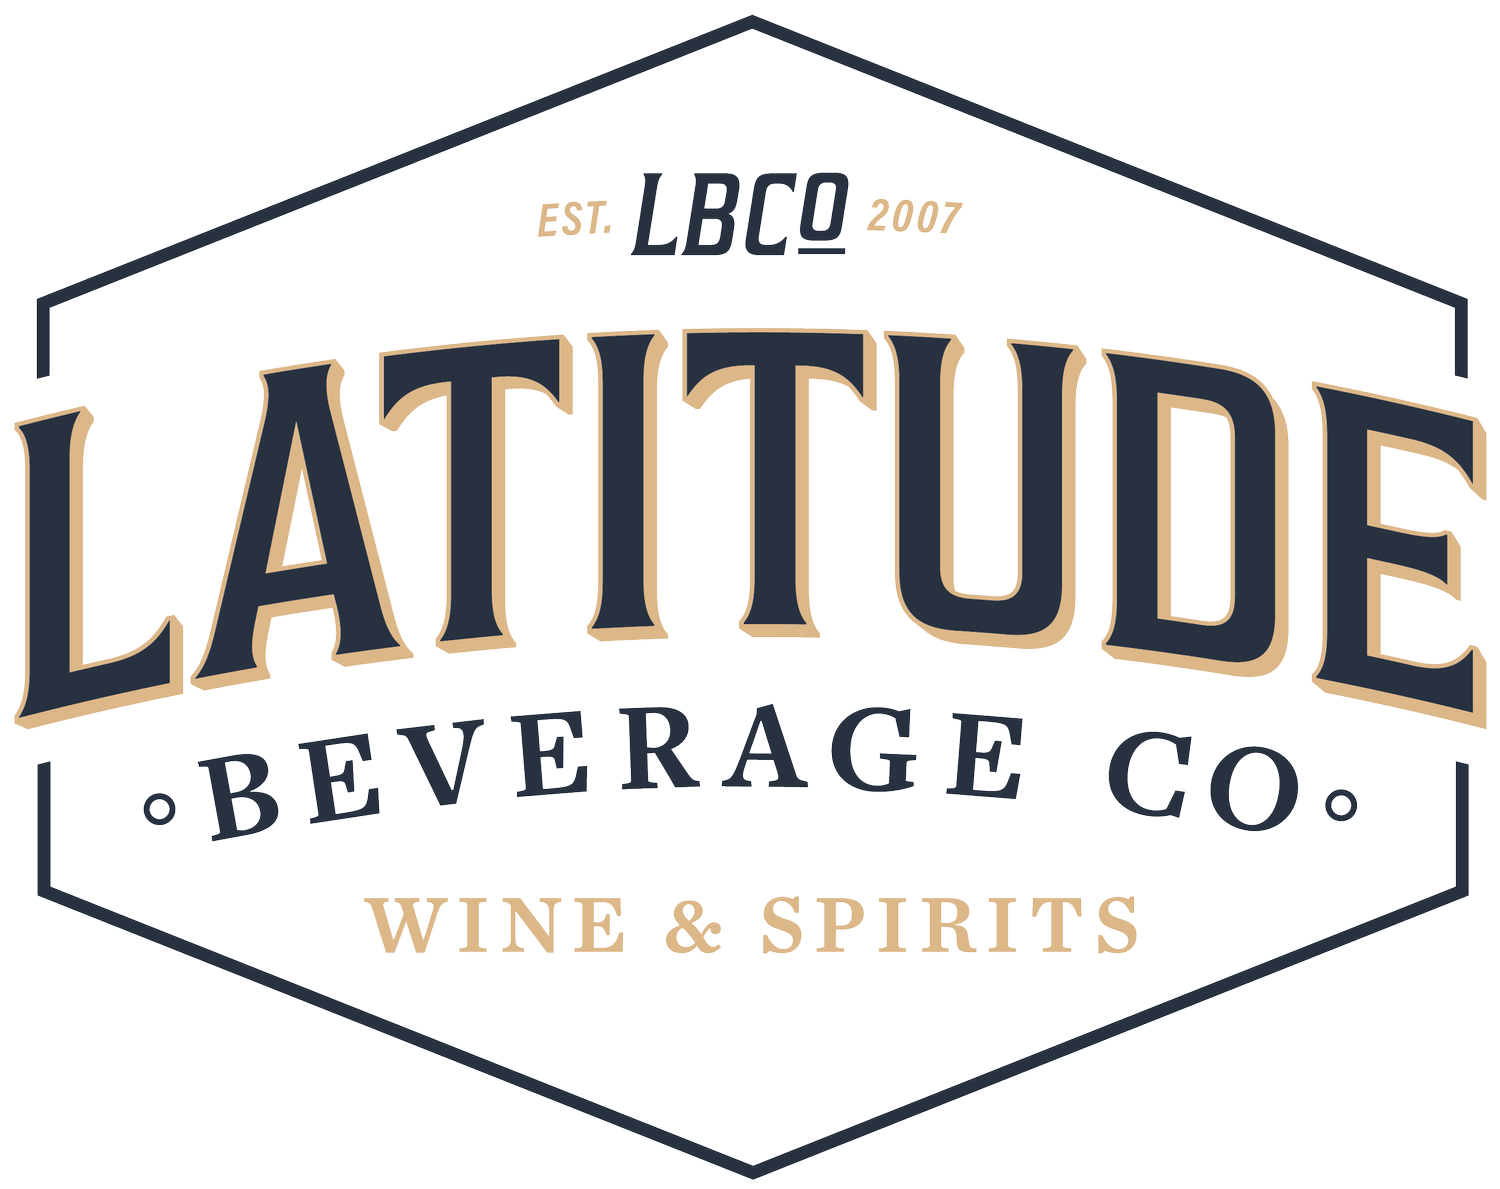 Latitude Beverage Co.